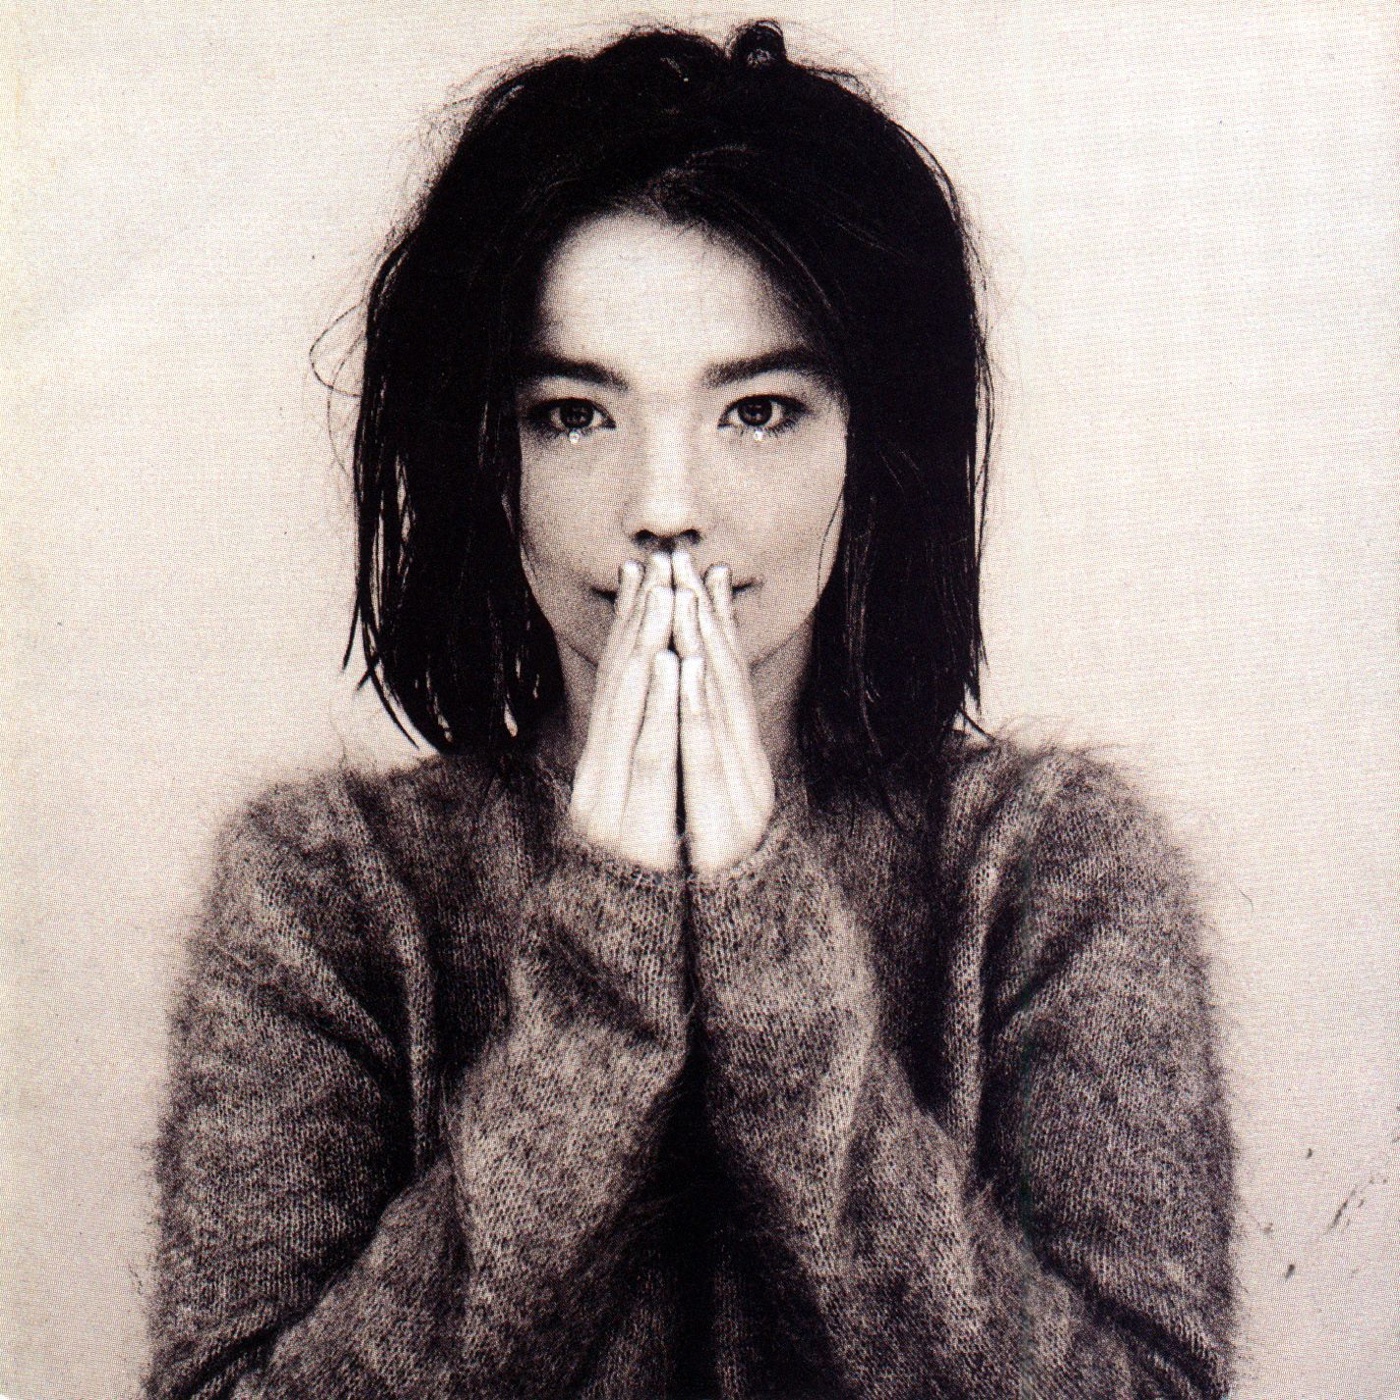 Debut by Björk